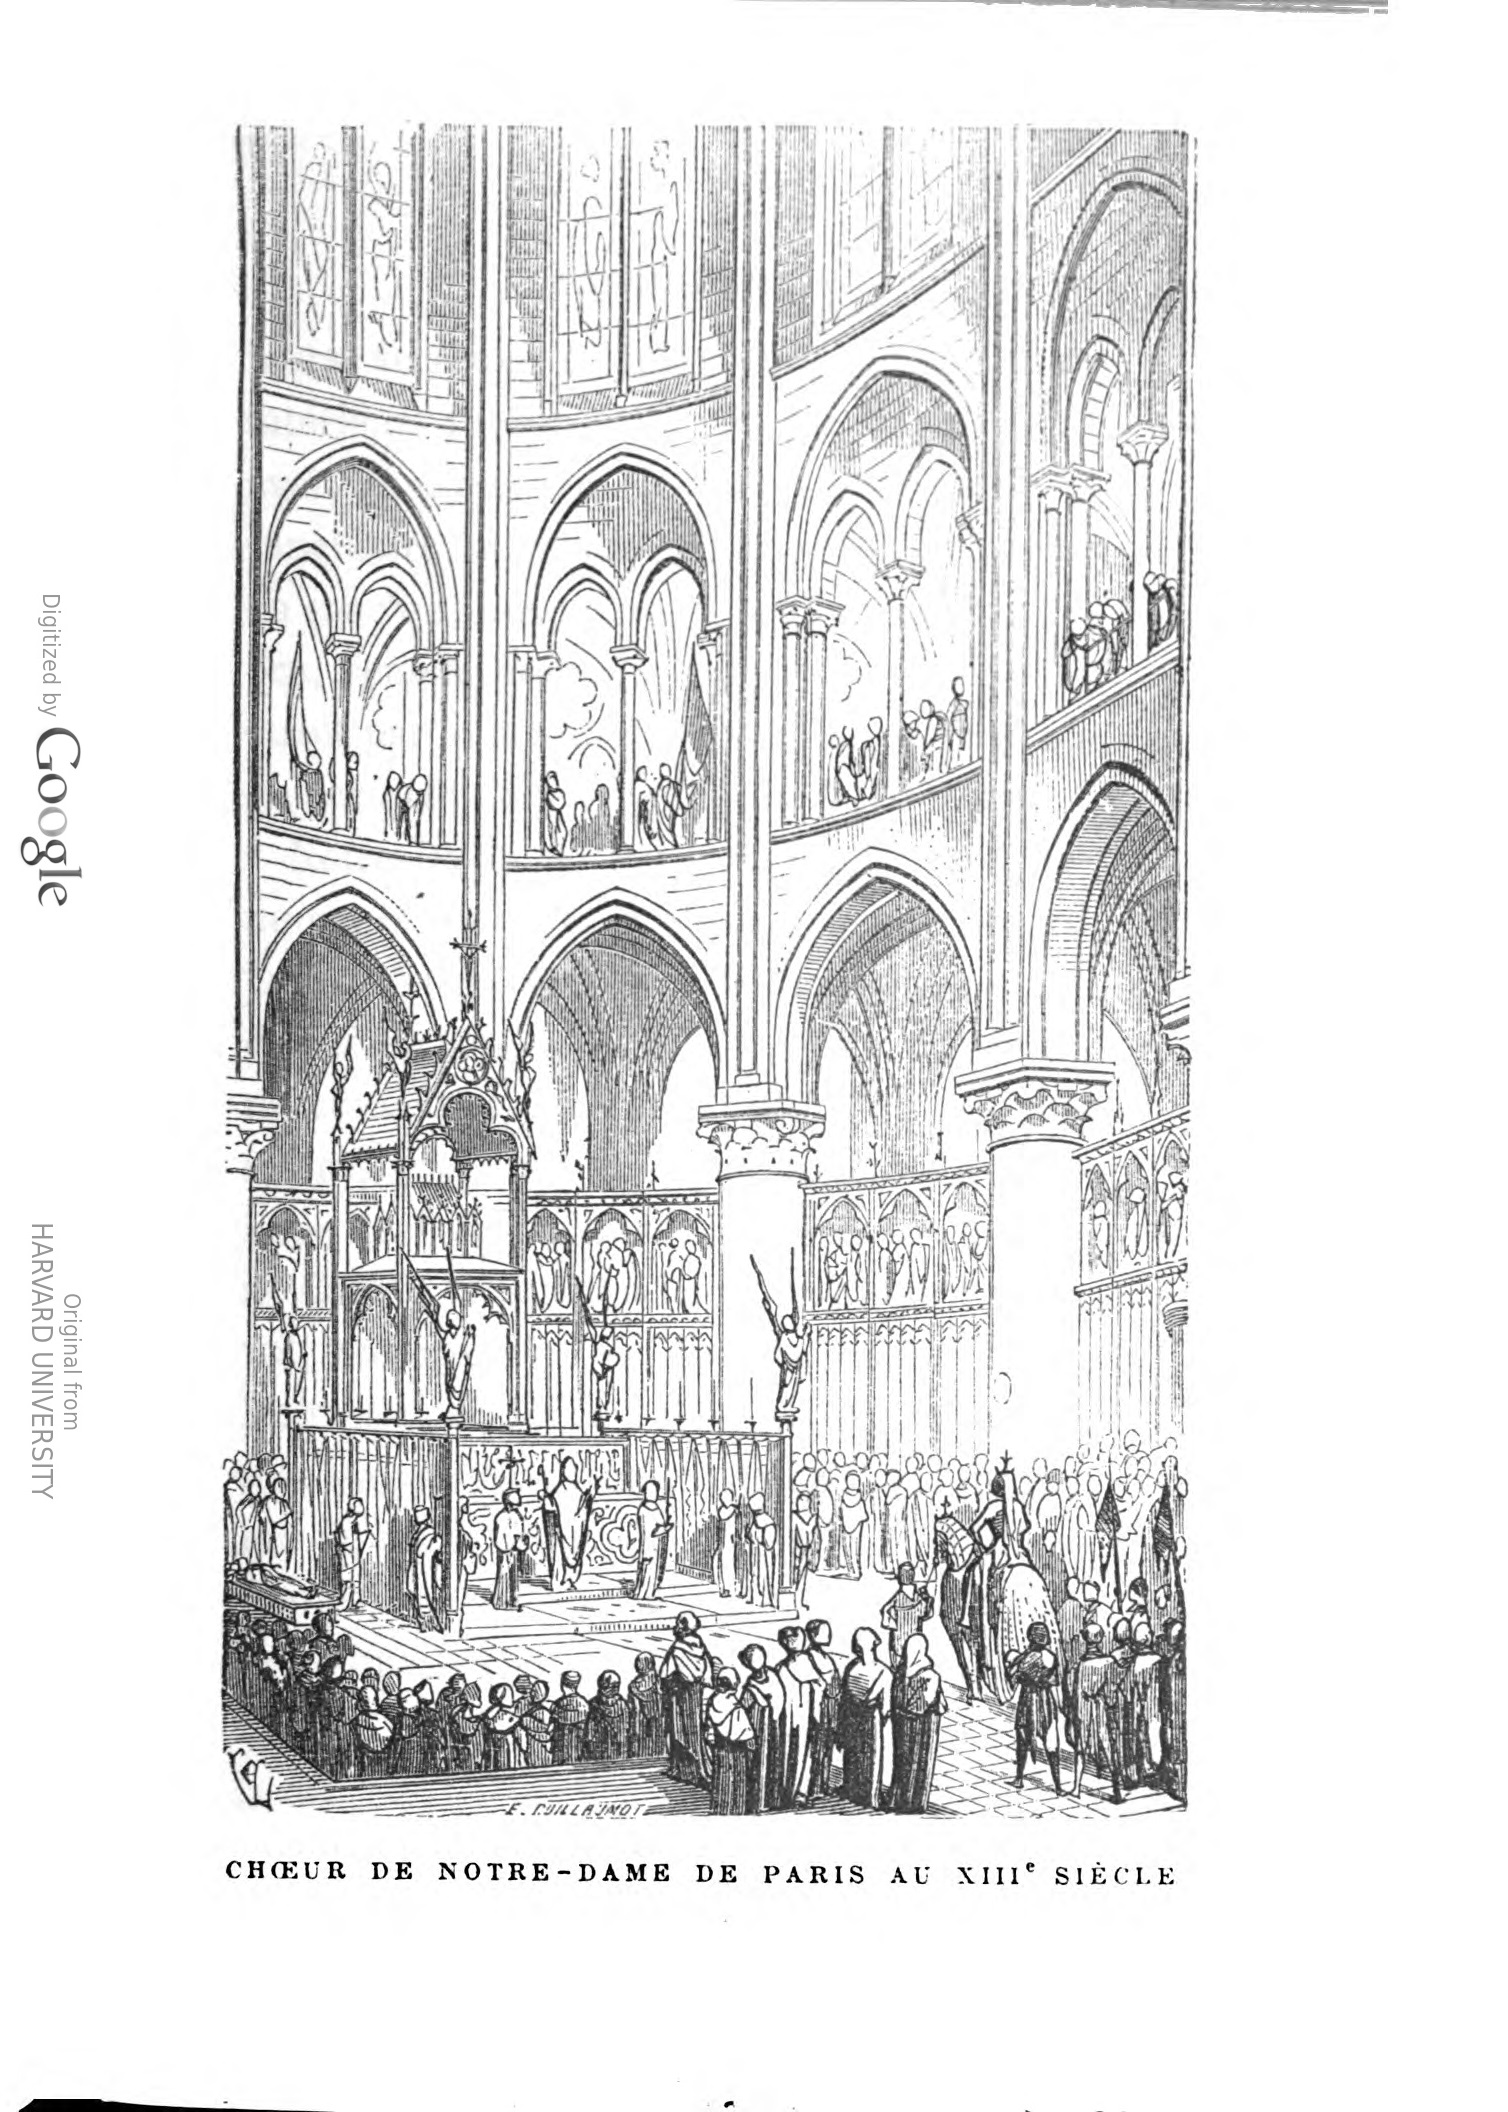 Viollet-le-Duc, Eugène-Emmanuel, 1814-1879, and Edgar Quinet. Les églises De Paris: Le Panthéon Par E. Quinet. Paris: C. Marpon et E. Flammarion, 1883. https://catalog.hathitrust.org/Record/100345704